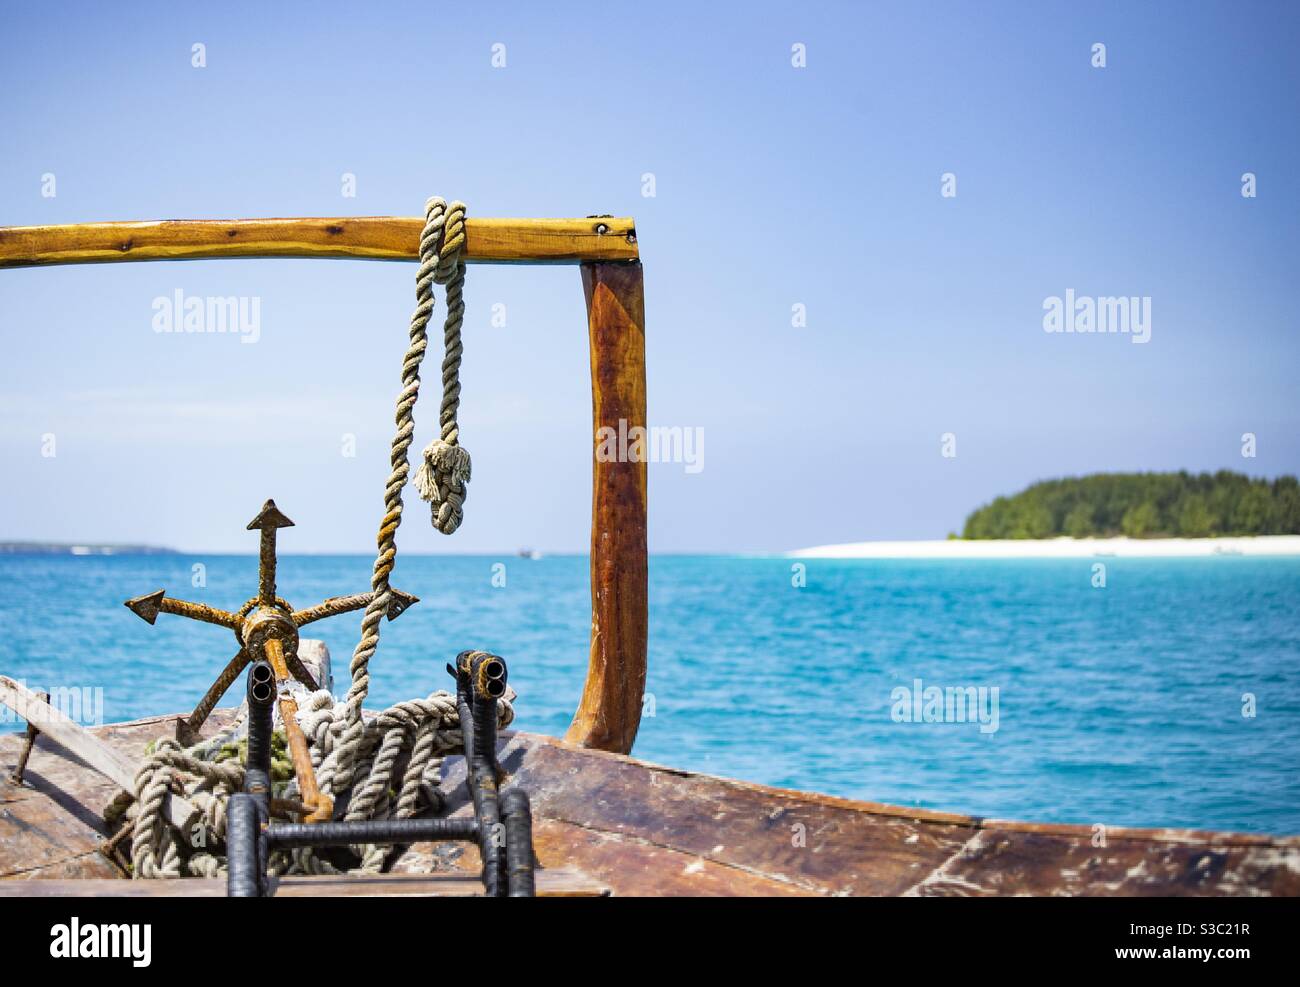 Vue depuis le bateau à Zanzibar, l'eau turquoise et la plage blanche Banque D'Images